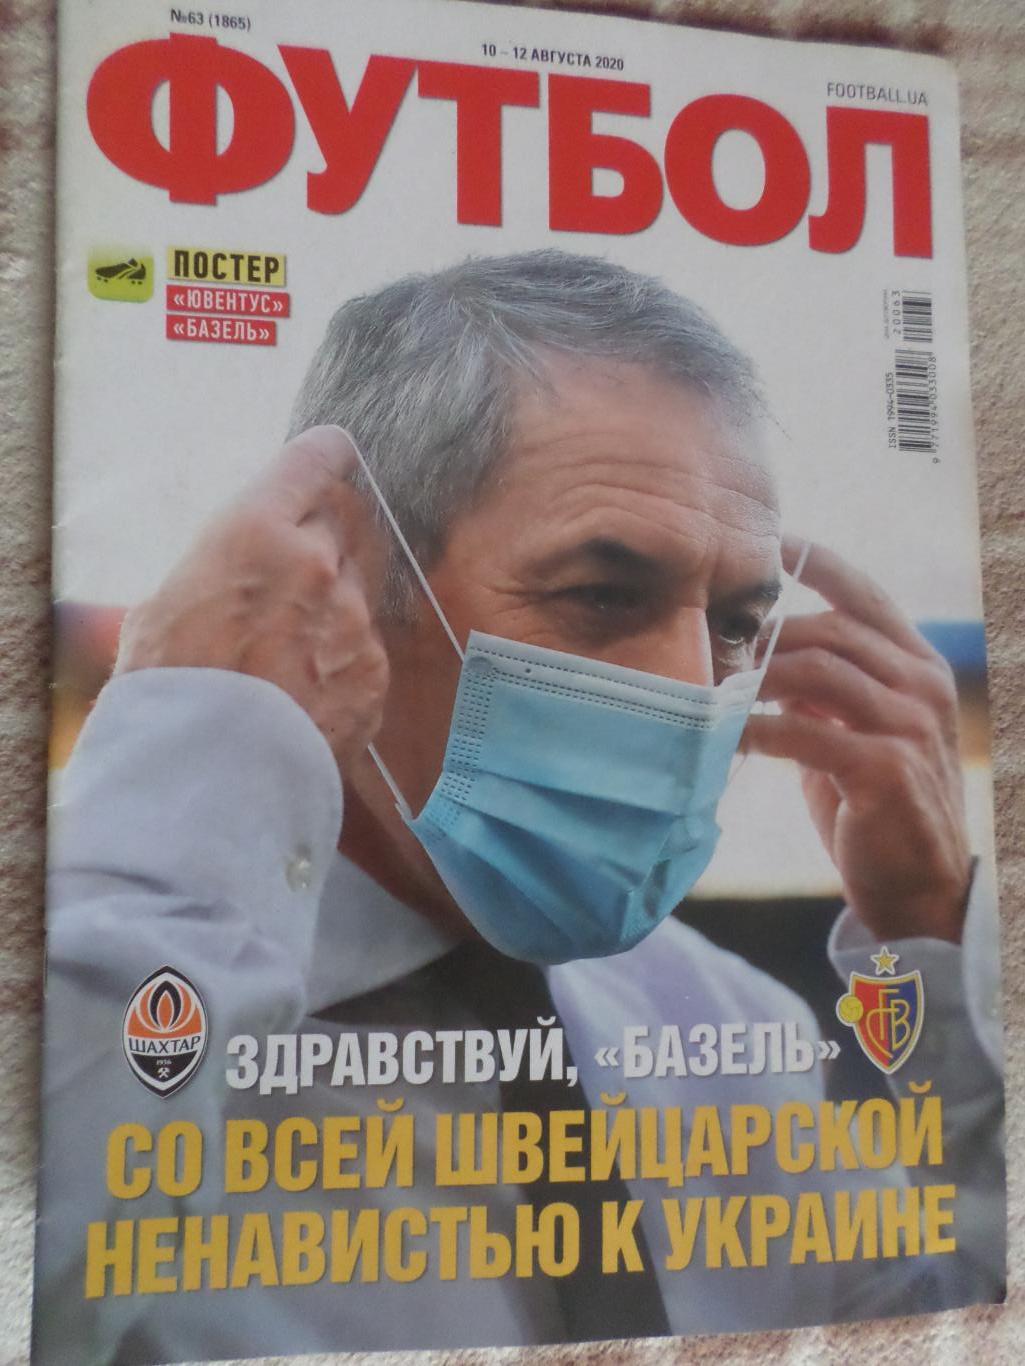 Еженедельник Футбол ( Киев) номер 63 2020 г